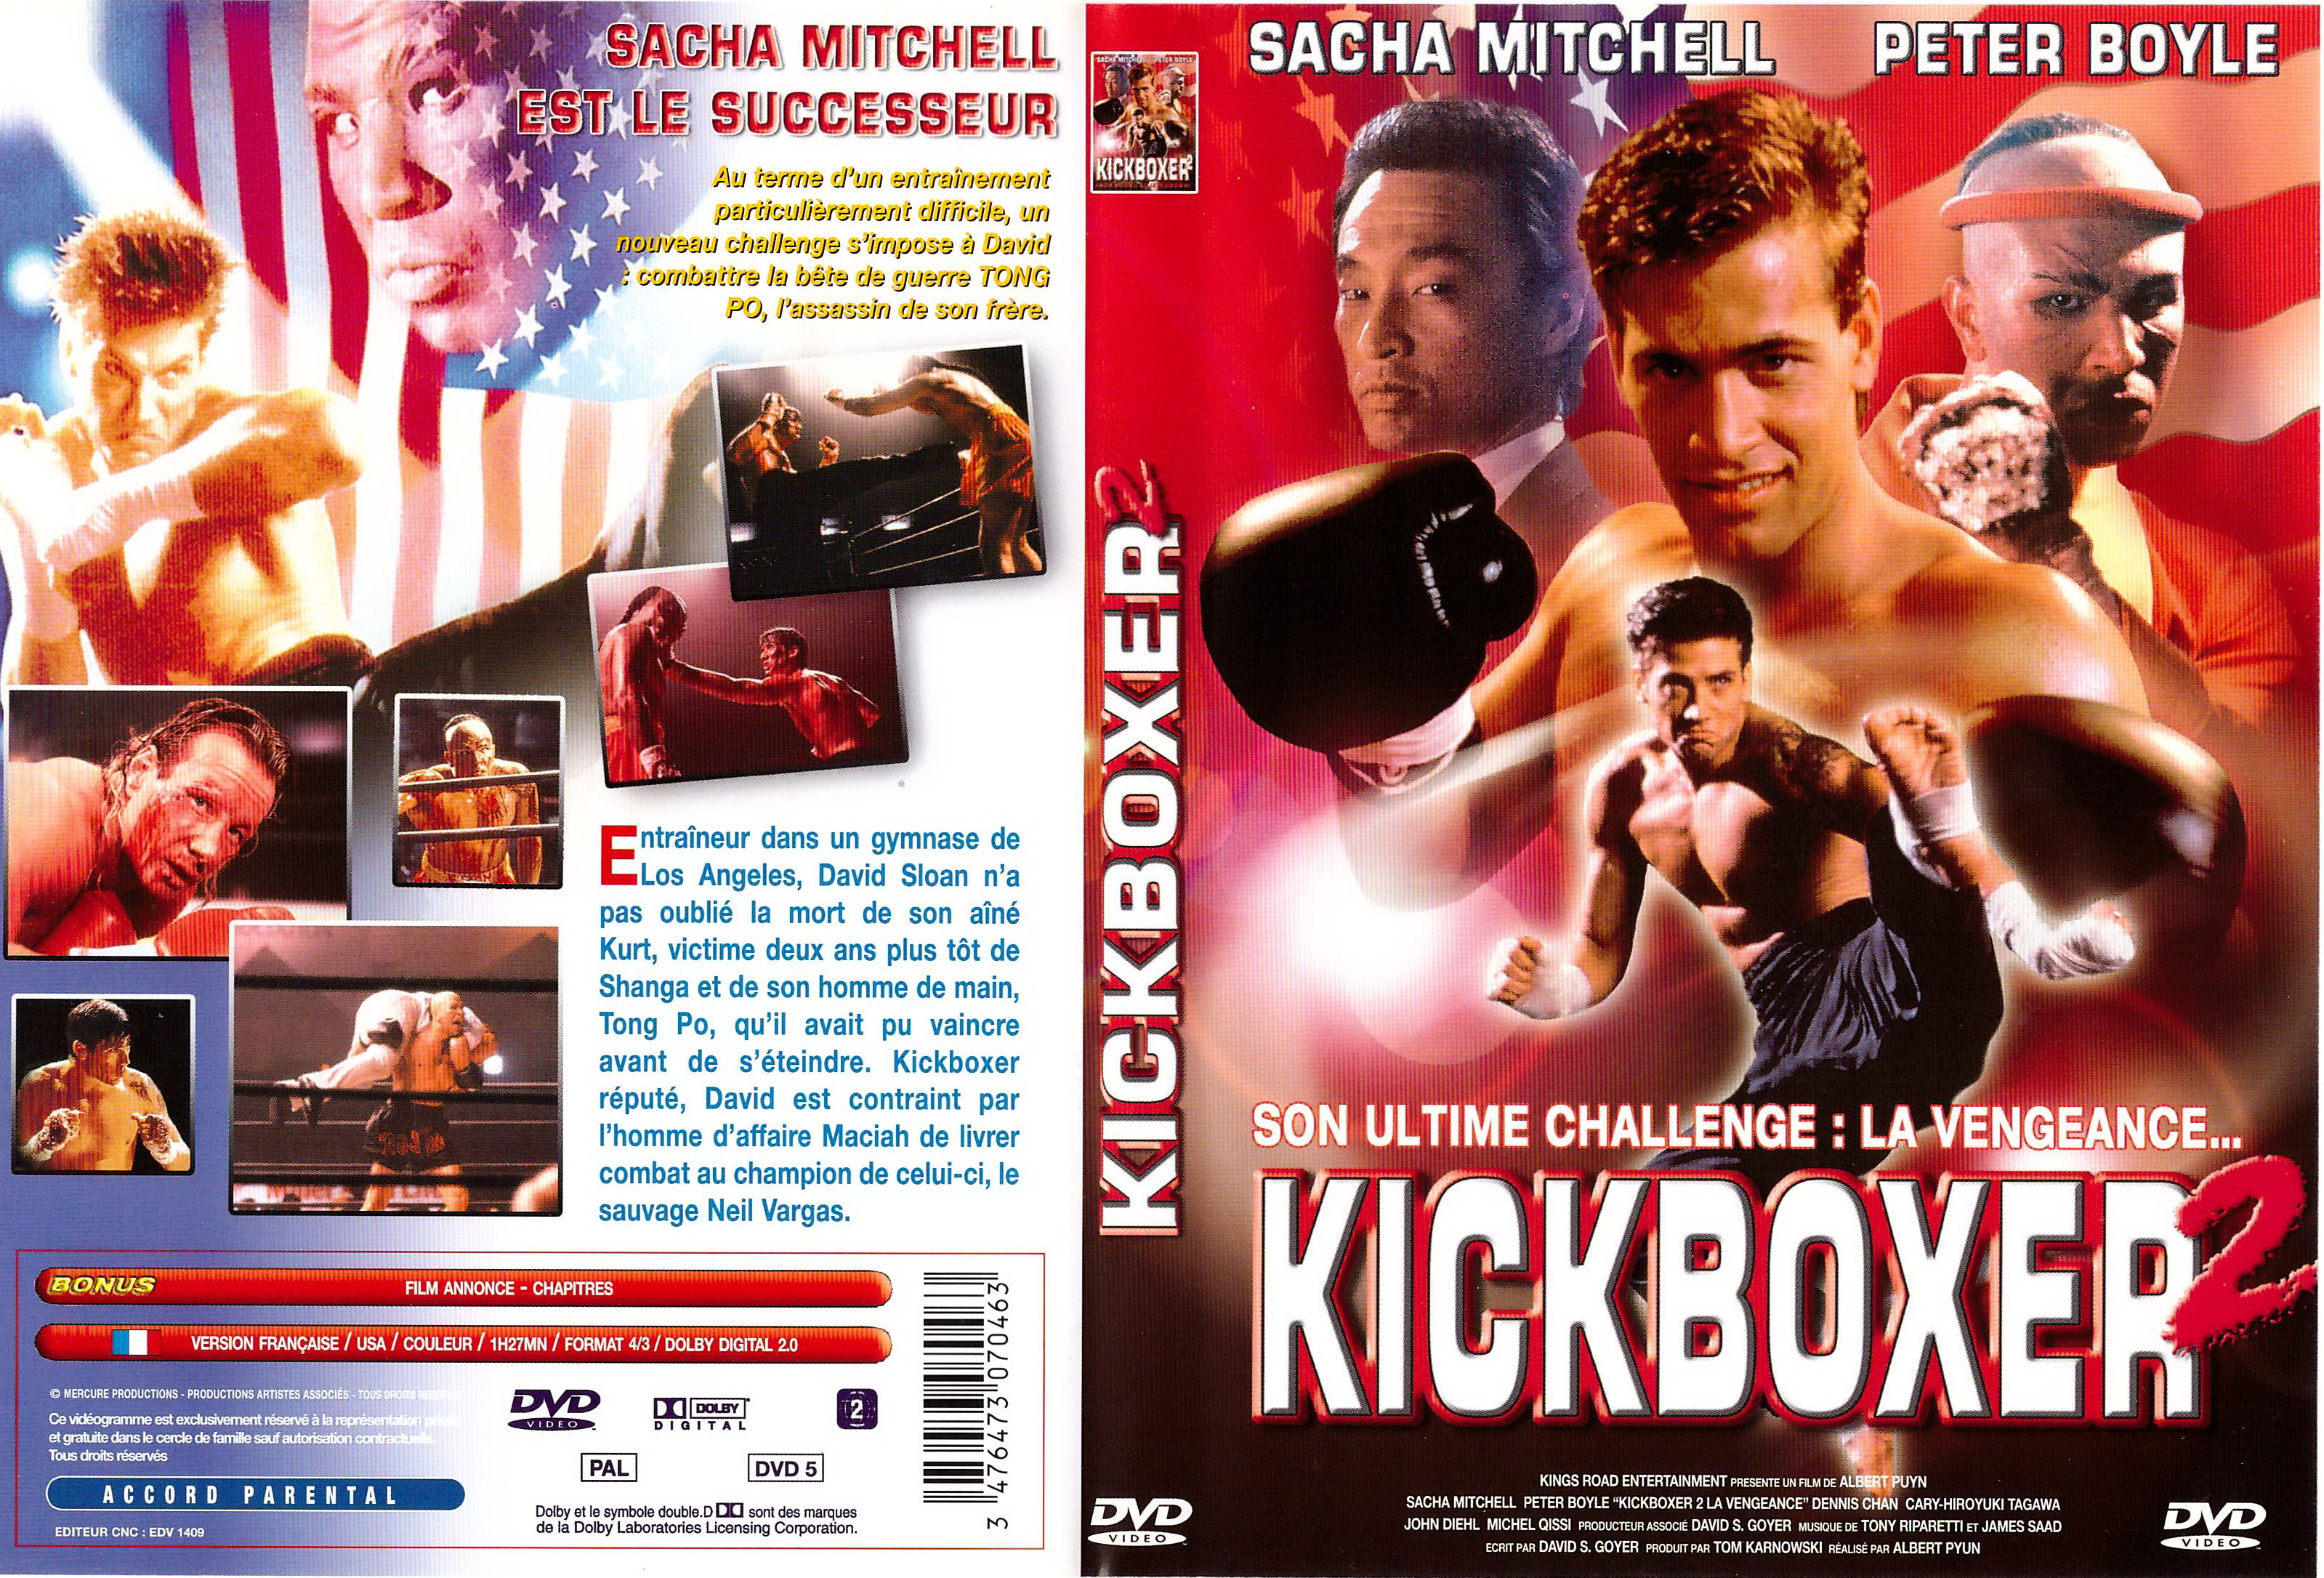 Jaquette DVD Kickboxer 2 v2